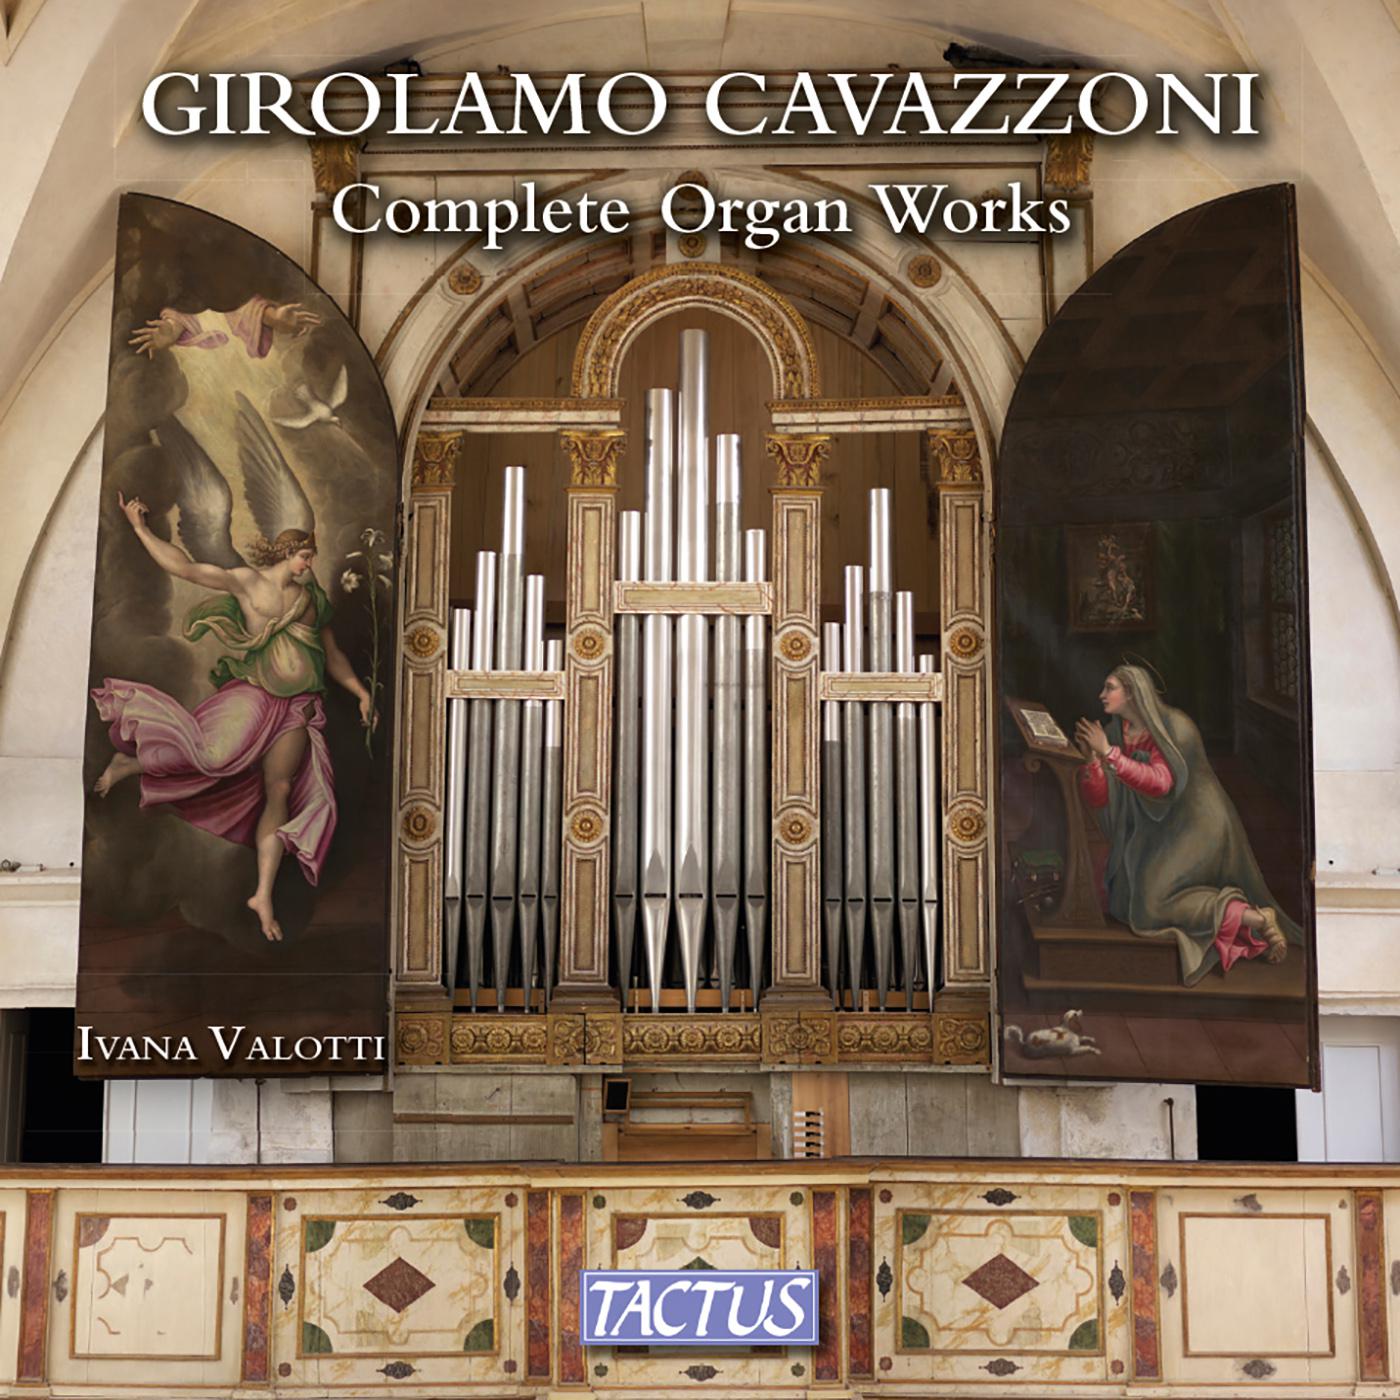 Gianluca Ferrarini - Intabulatura cioe misse, himni, magnificat, Book 2: Missa Dominicalis:Sanctus